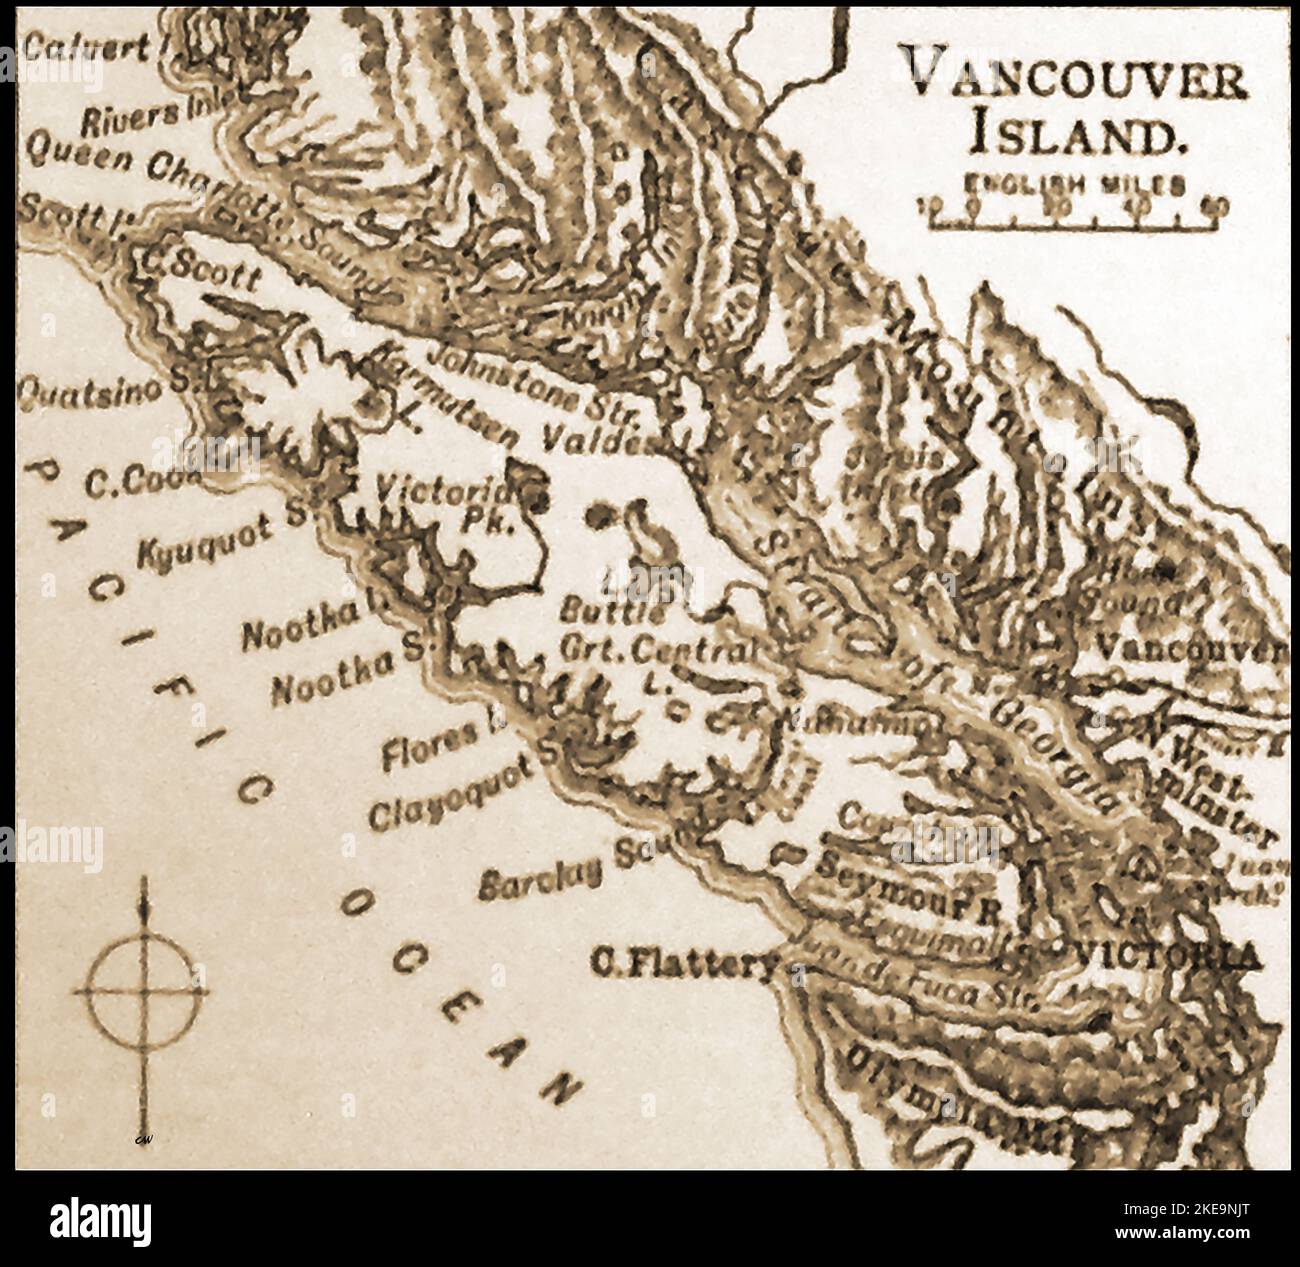 Una mappa di fine '19th dell'Isola di Vancouver l'Isola di Vancouver si trova sull'Oceano Pacifico nord orientale ed è l'isola più grande e popolosa lungo le coste occidentali delle Americhe. Ha un clima di stile mediterraneo che consente la coltivazione di piante subtropicali tra cui arance e olive. Foto Stock